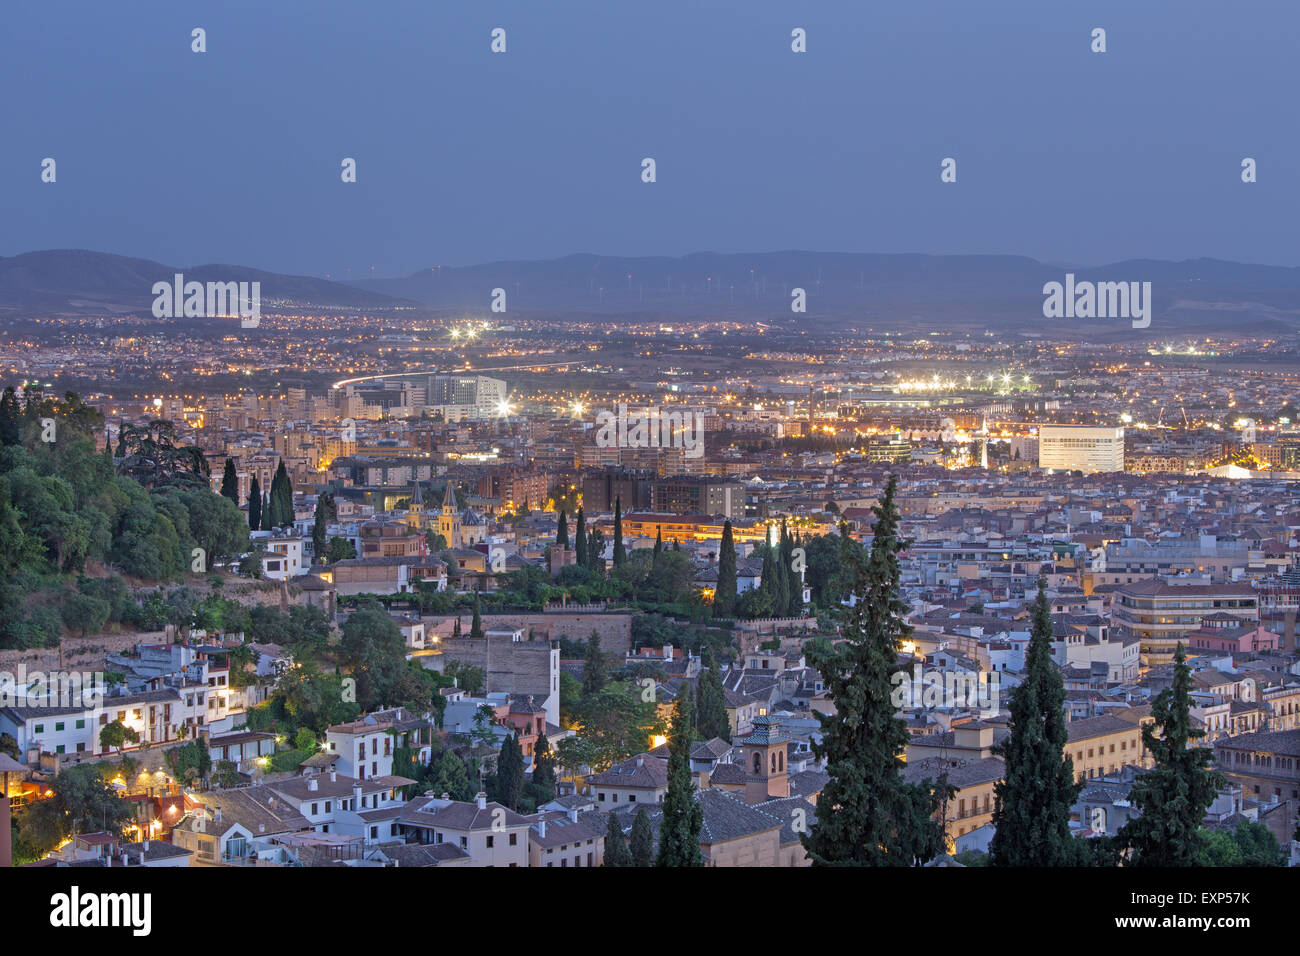 Granada - Le prospettive oltre la città al crepuscolo. Foto Stock